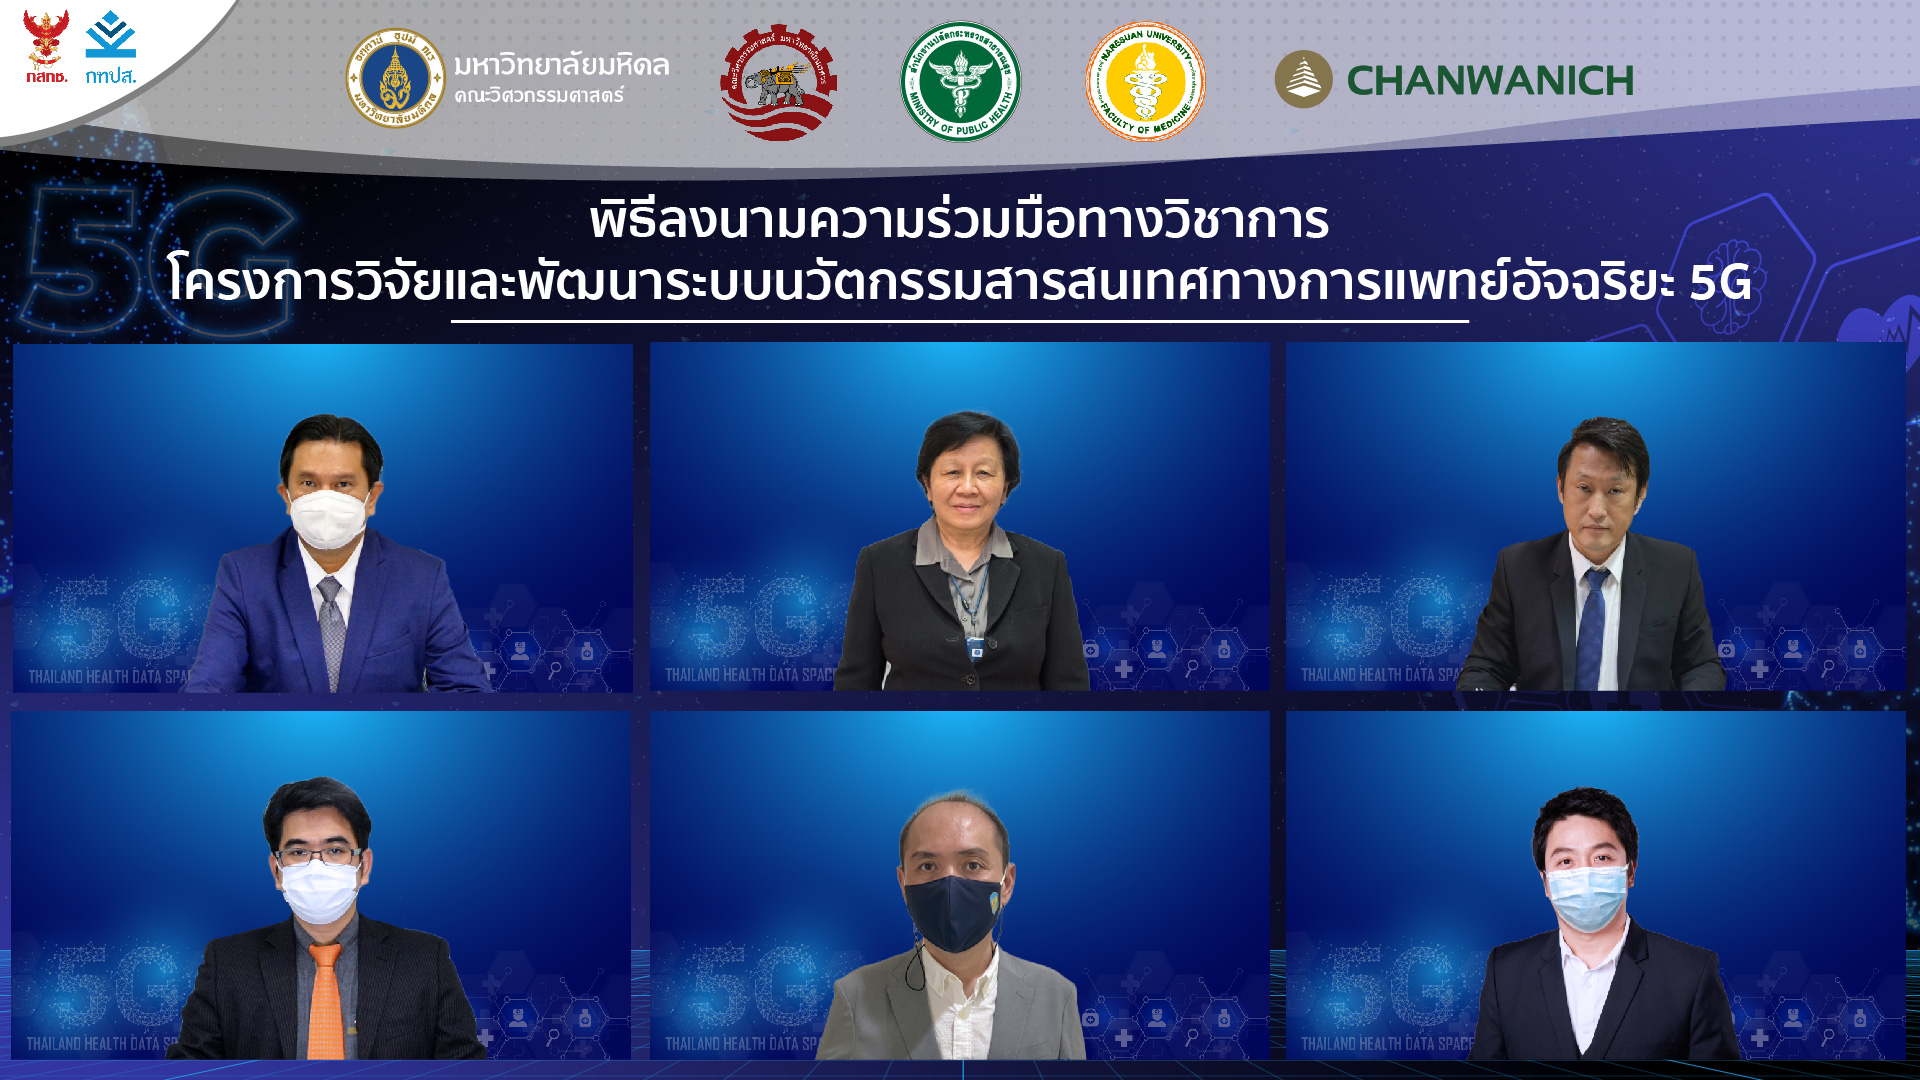 5 องค์กร ผนึกพลังสร้าง Thailand Health Data Space 5G ระบบสารสนเทศการแพทย์อัจฉริยะประเทศไทยให้เป็นจริงและครบวงจร คาดทดสอบ Sandbox กลางปี 2565